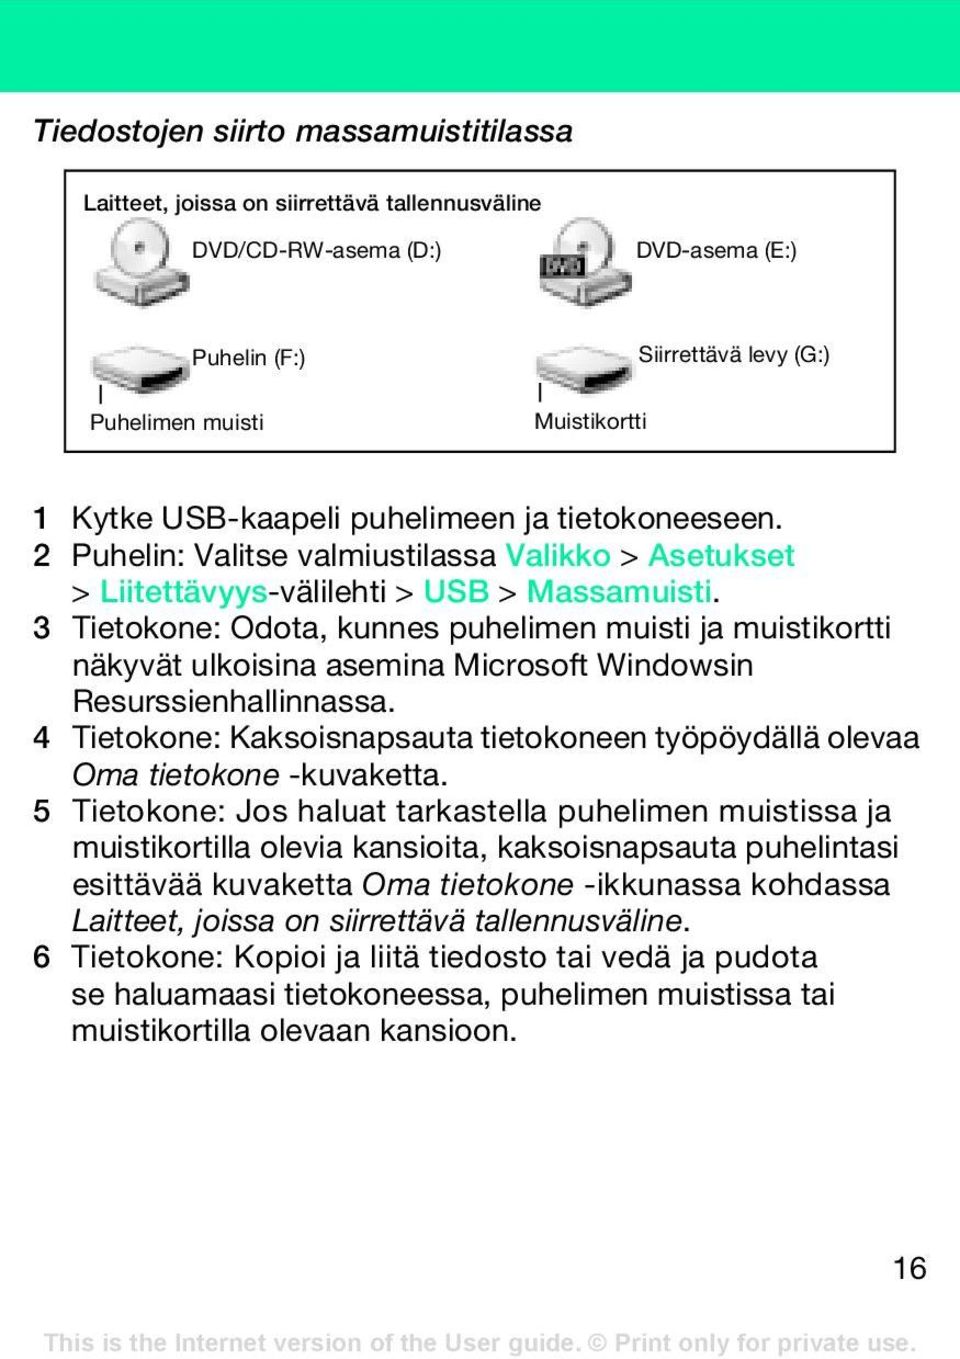 3 Tietokone: Odota, kunnes puhelimen muisti ja muistikortti näkyvät ulkoisina asemina Microsoft Windowsin Resurssienhallinnassa.